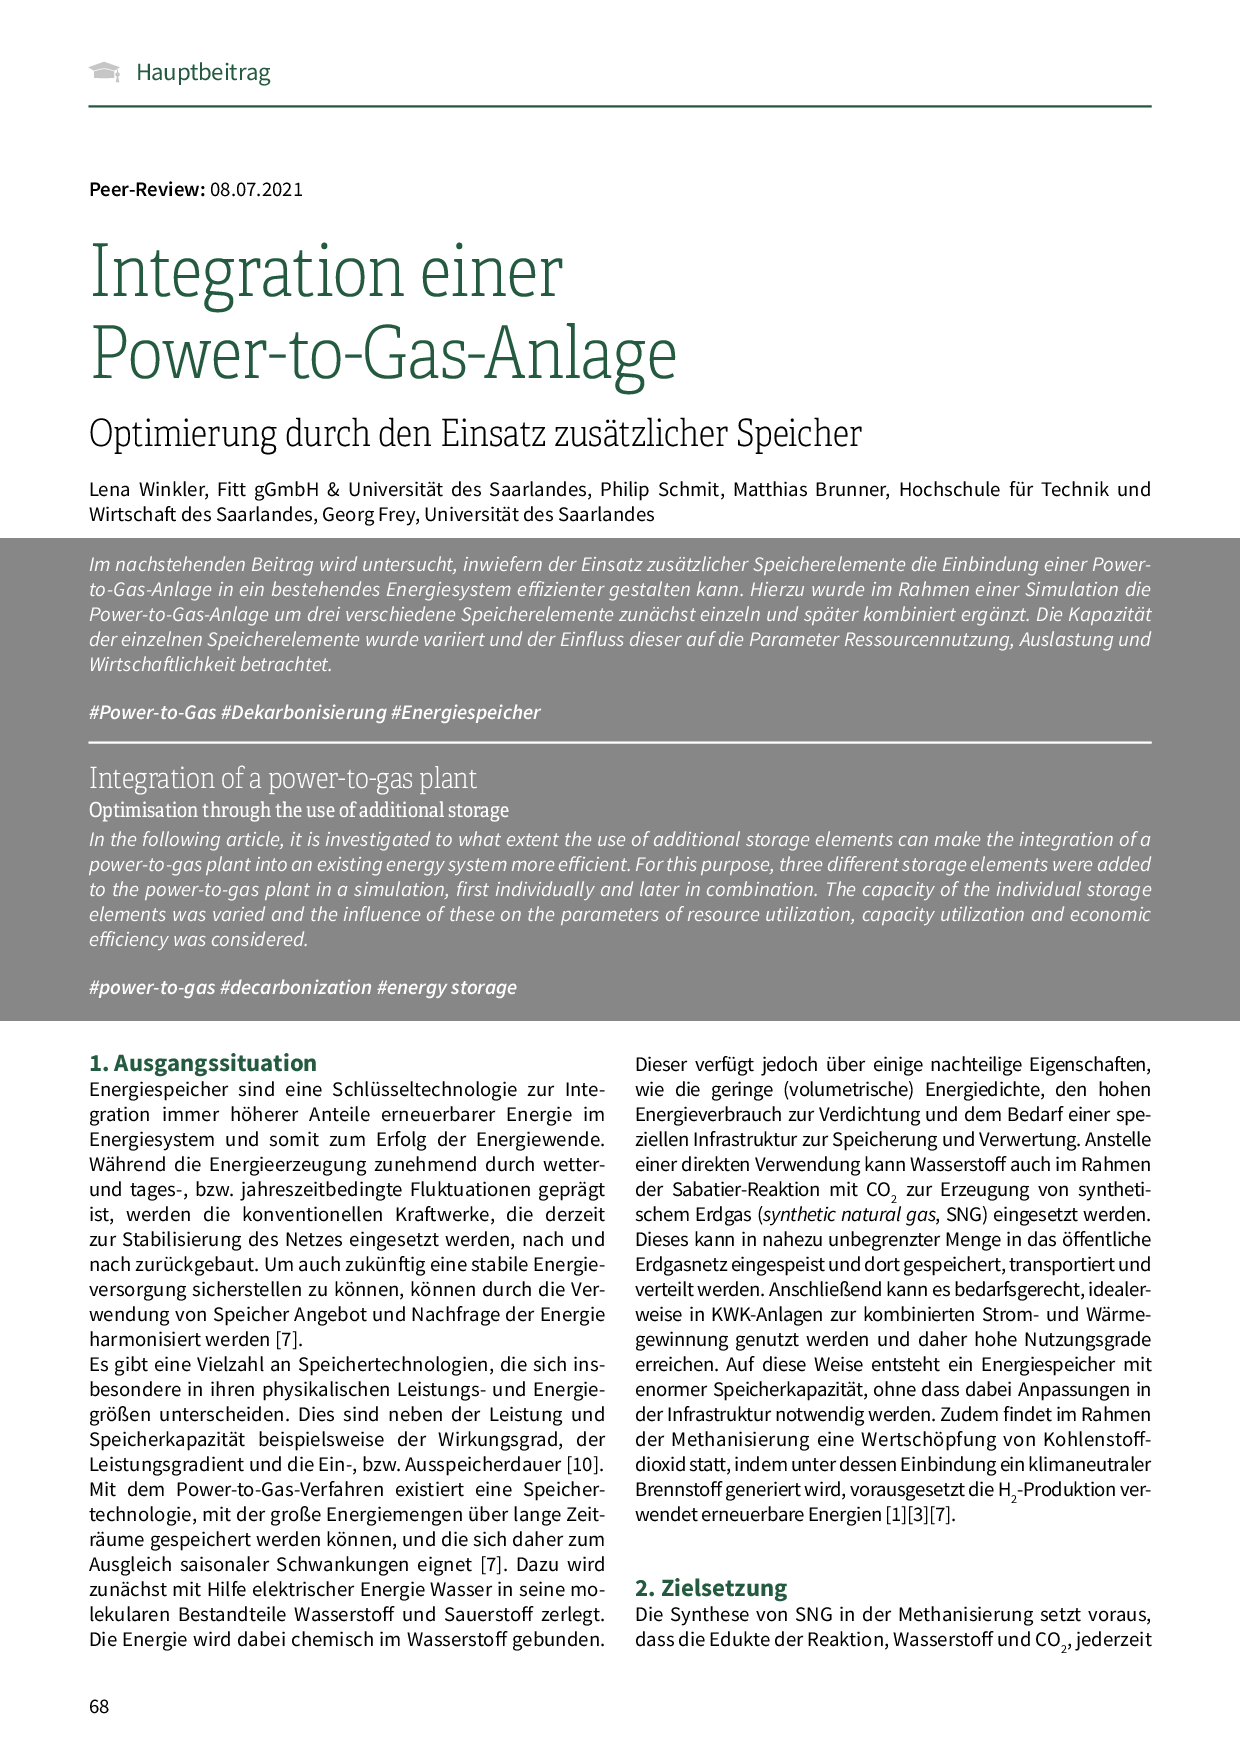 Integration einer Power-to-Gas-Anlage